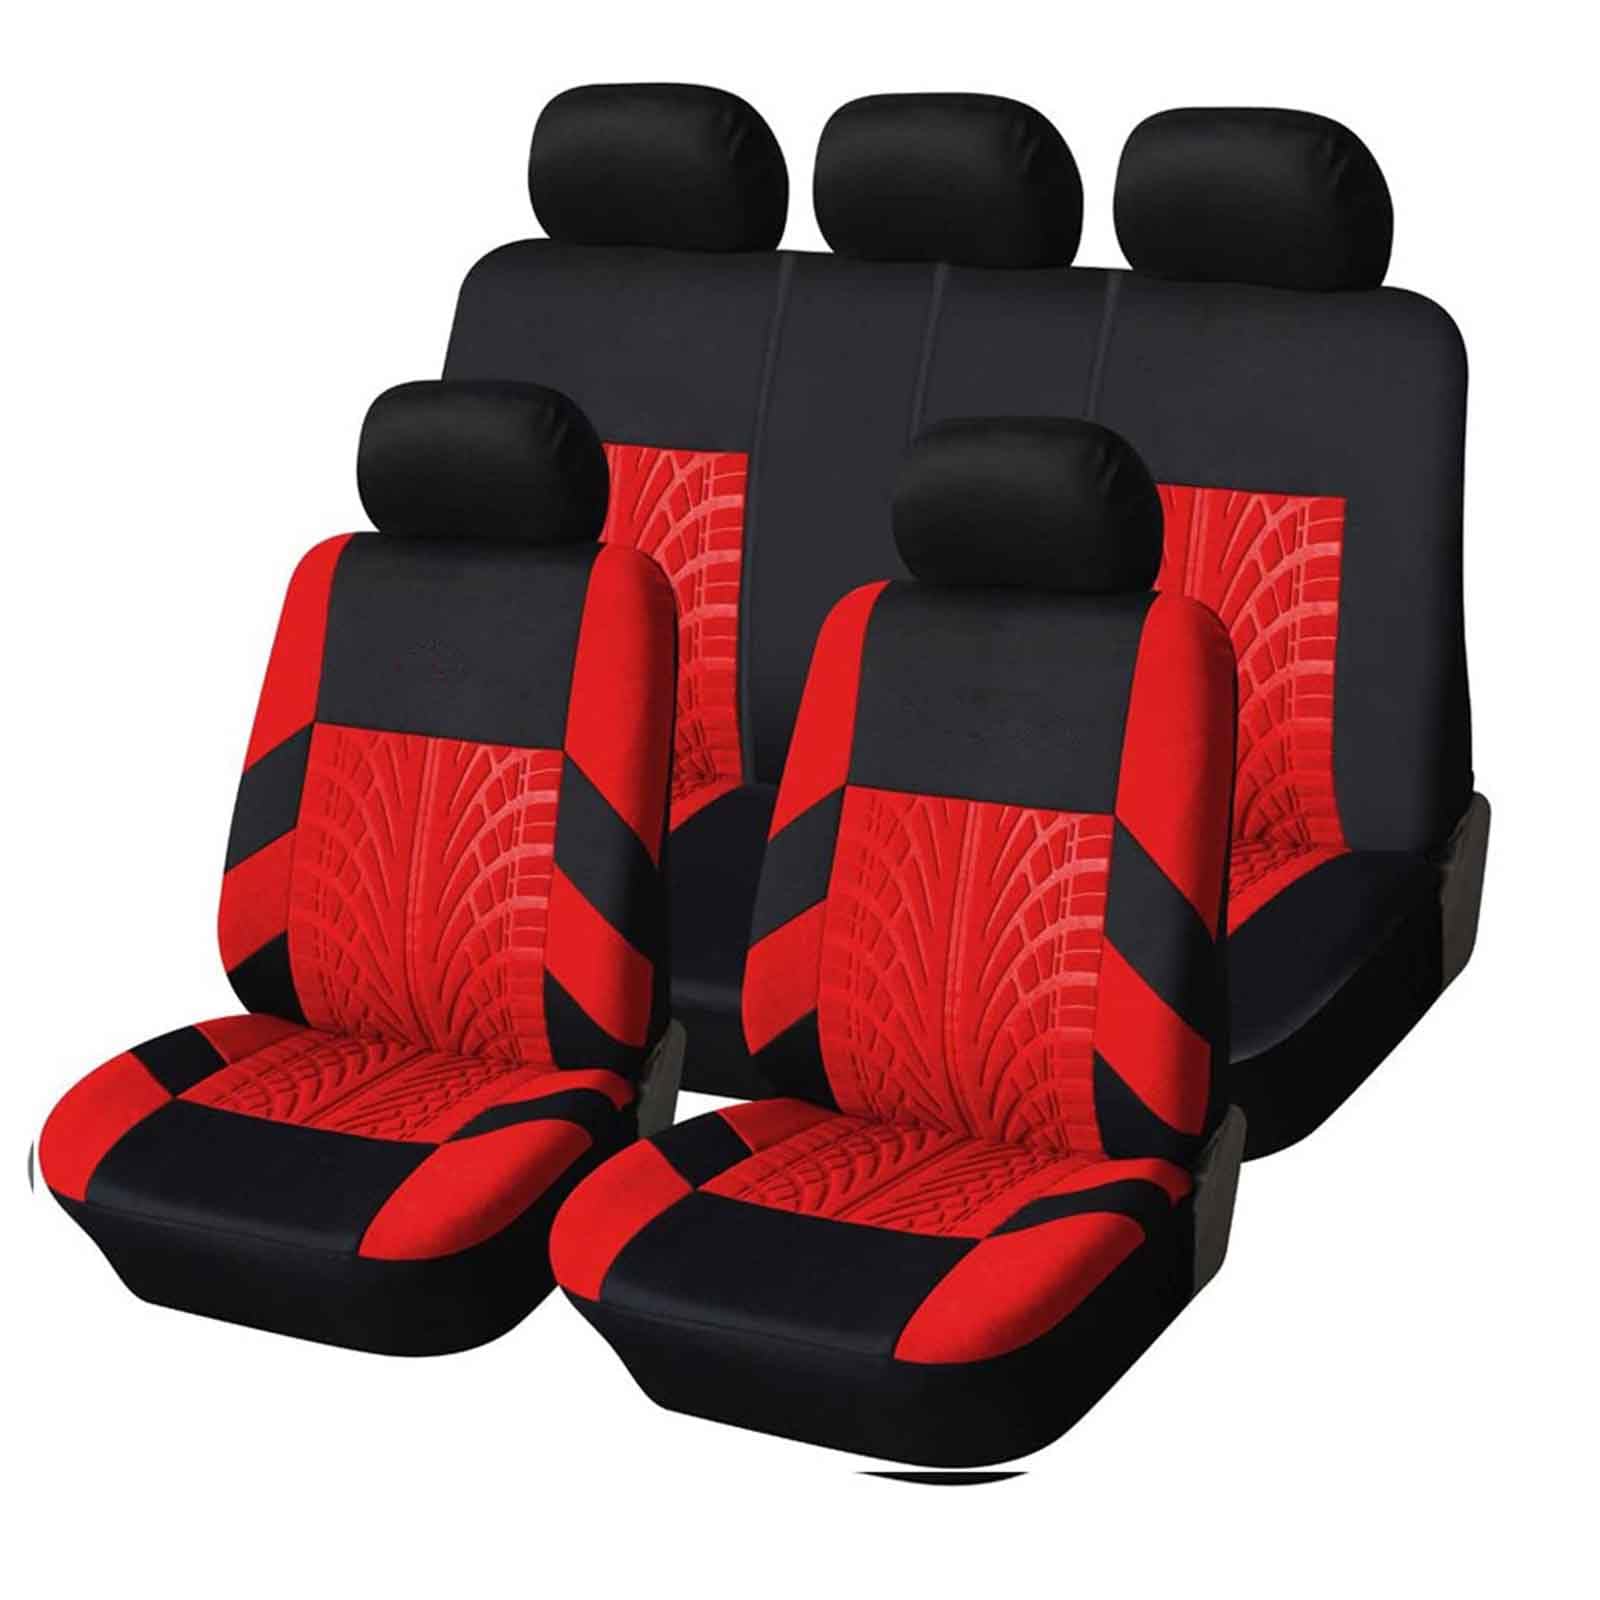 ELEDVB Auto-Sitzbezüge für Kia Rio 2007 2008 2009 2010 2011, Auto-Schonbezüge für Fahrersitz & Beifahrer Komplettset Autositzschoner Reifenschienen Autositzzubehör Airbag-Kompatible, Red von ELEDVB